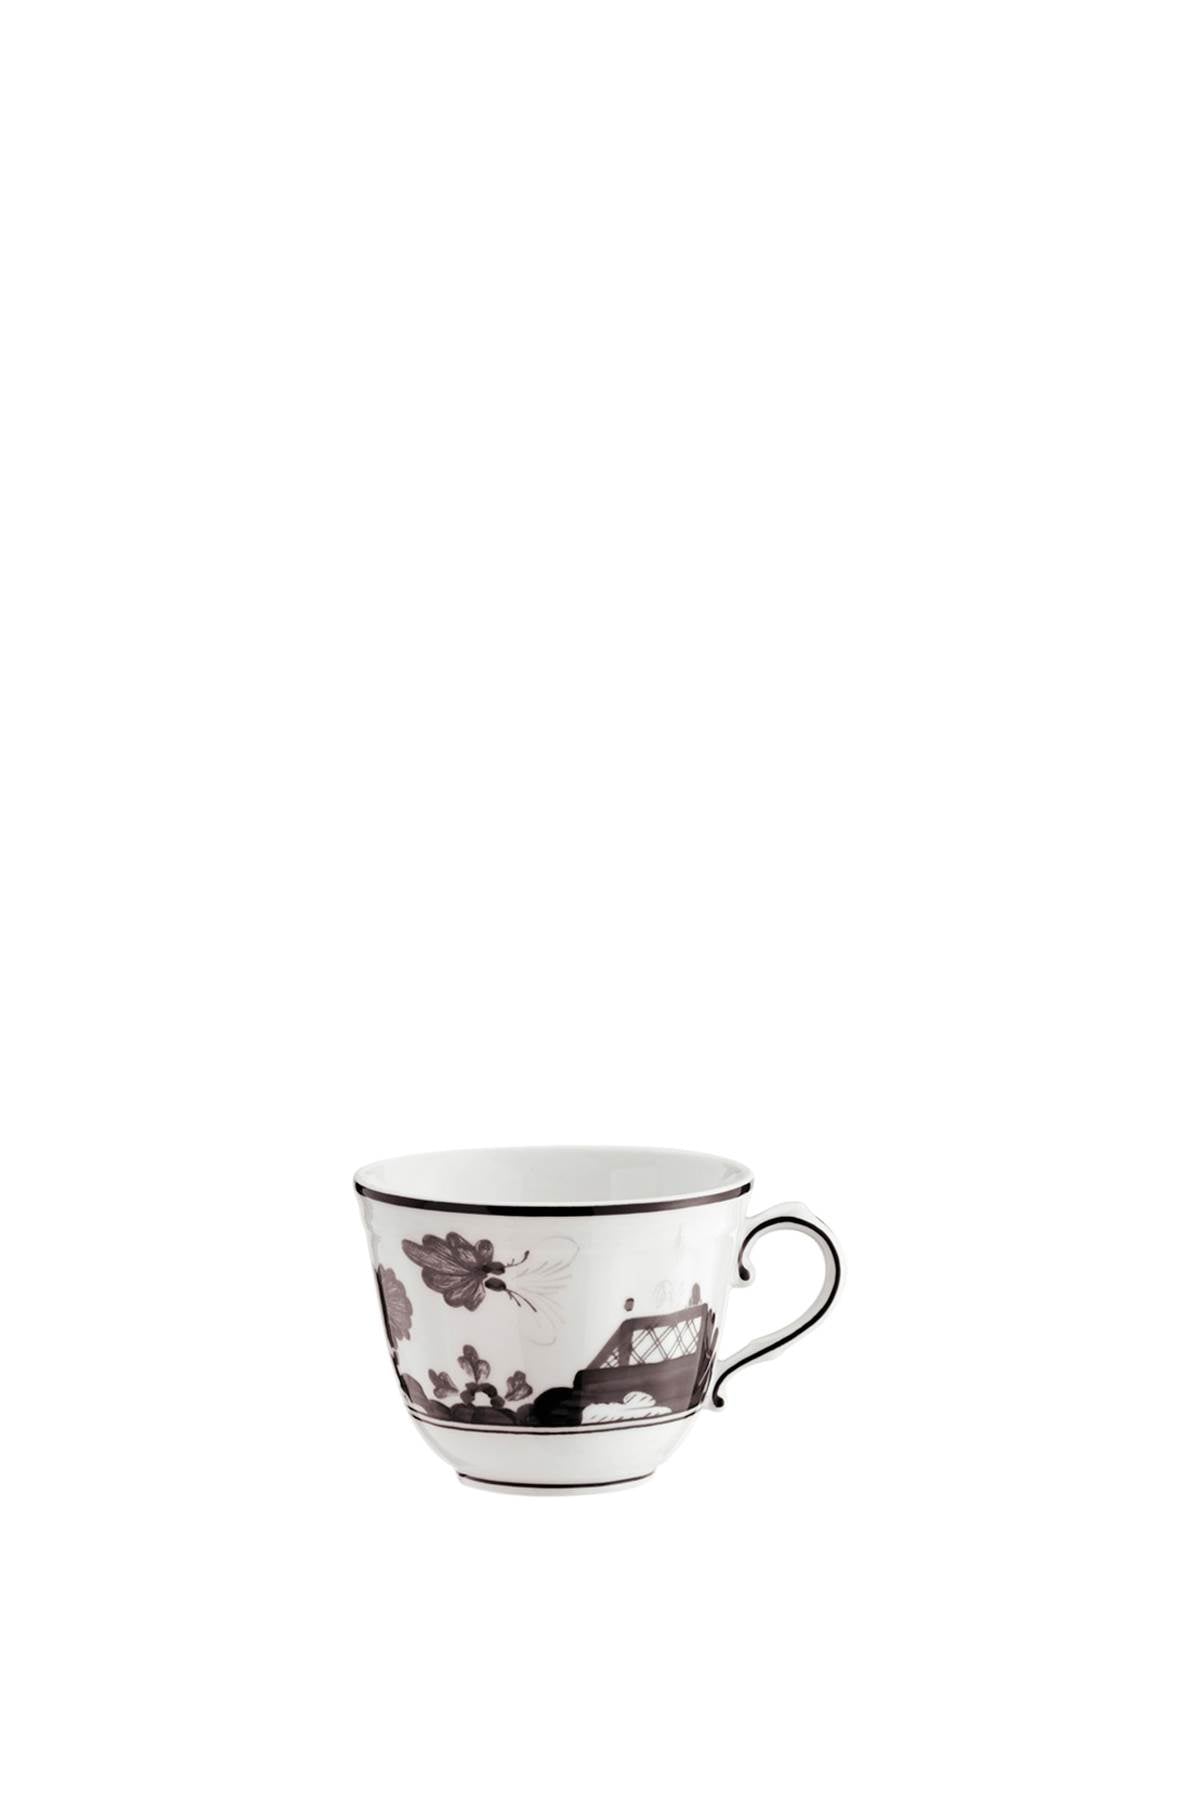 Ginori 1735 'oriente italiano' coffee cup-0